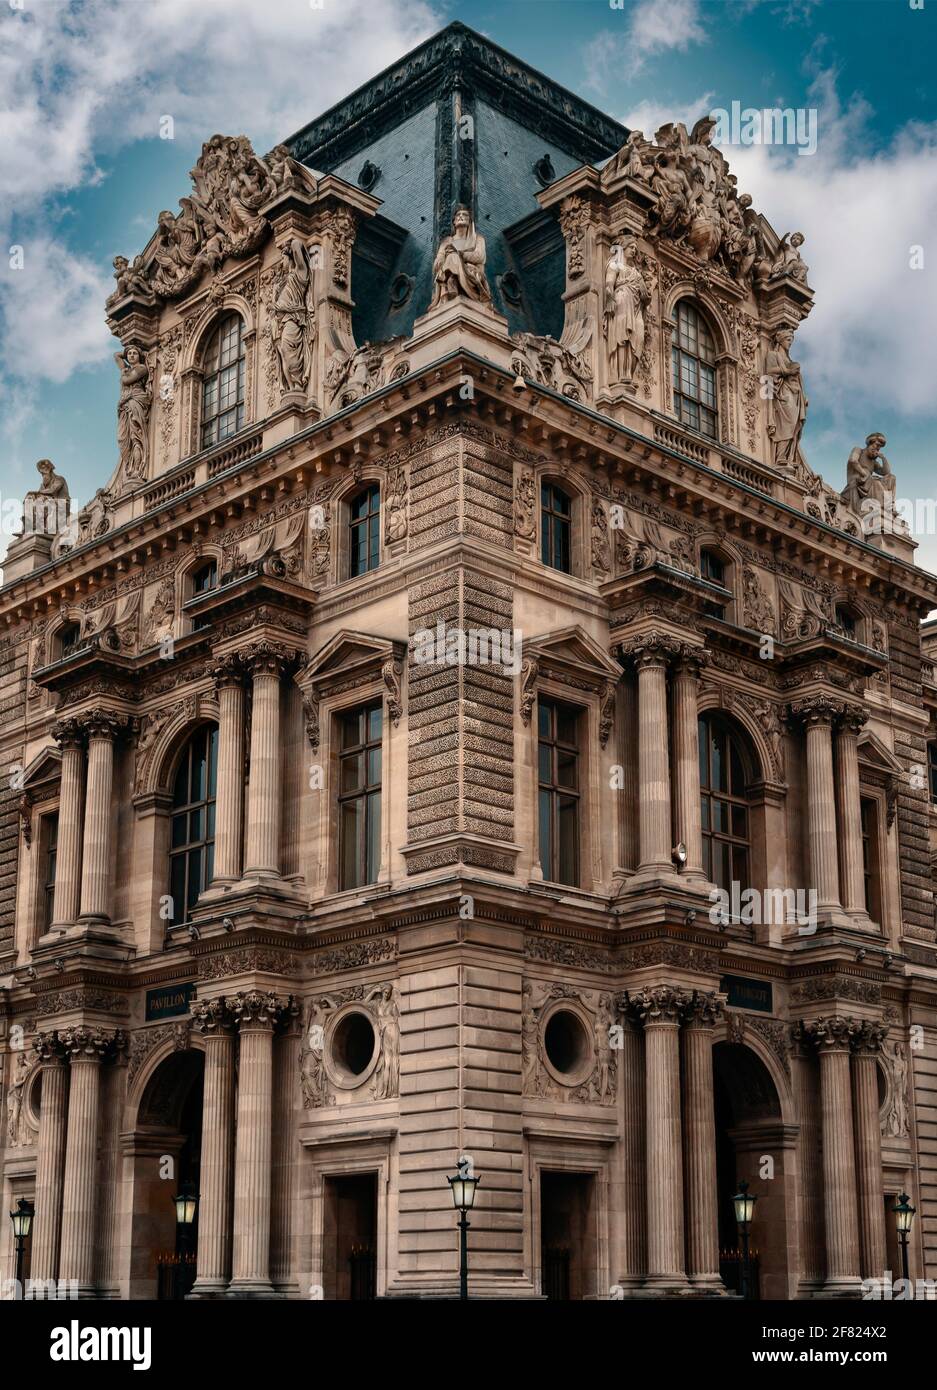 Louvre Museum ornate building detail. Musée du Louvre, Paris, France, Europe Stock Photo